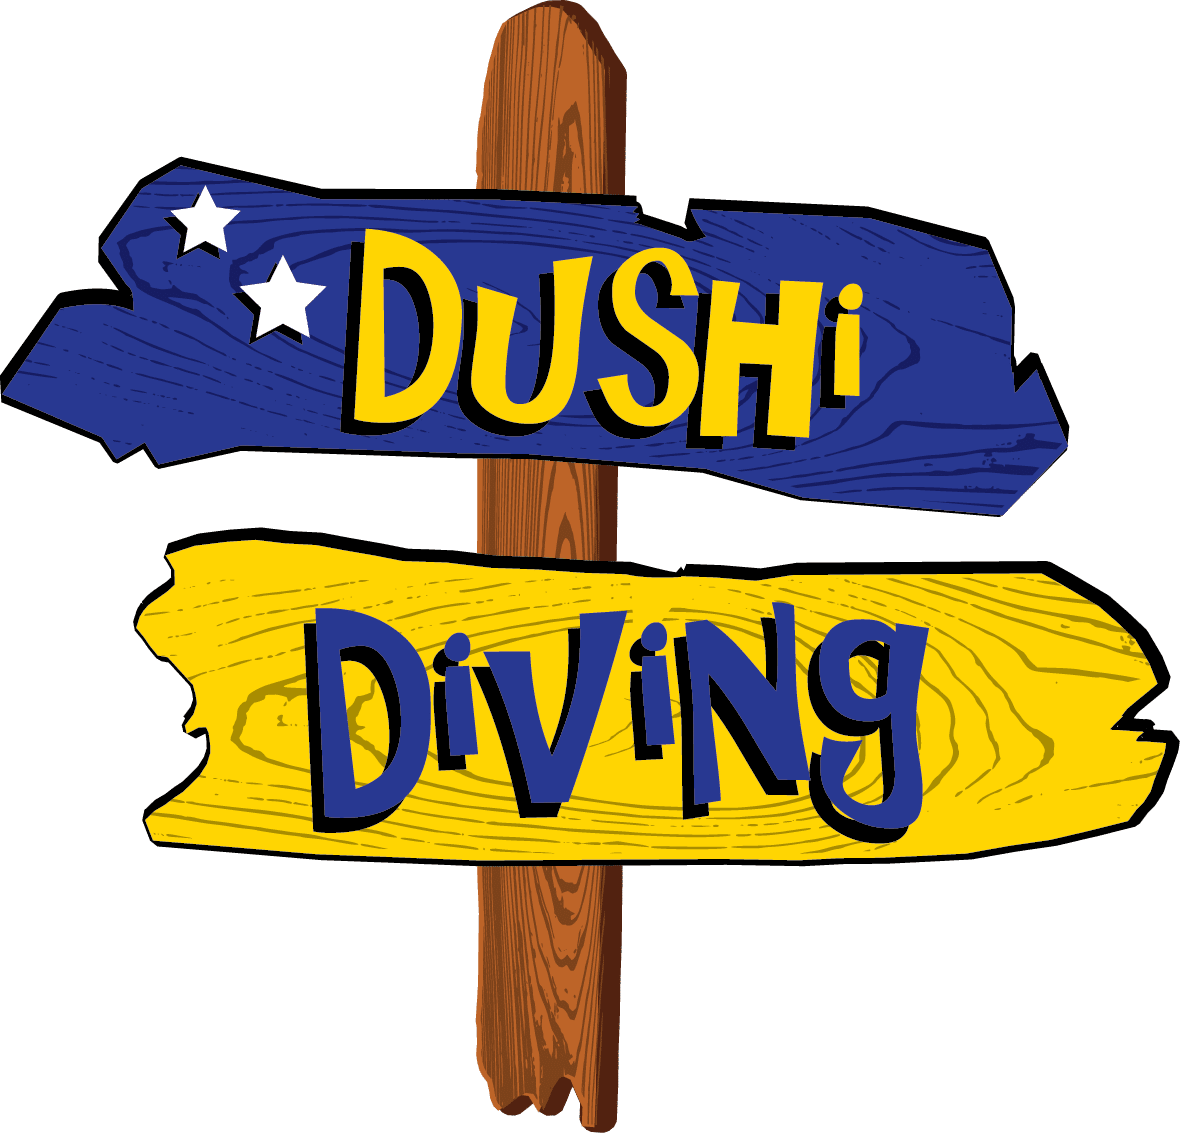 Dushi Diving